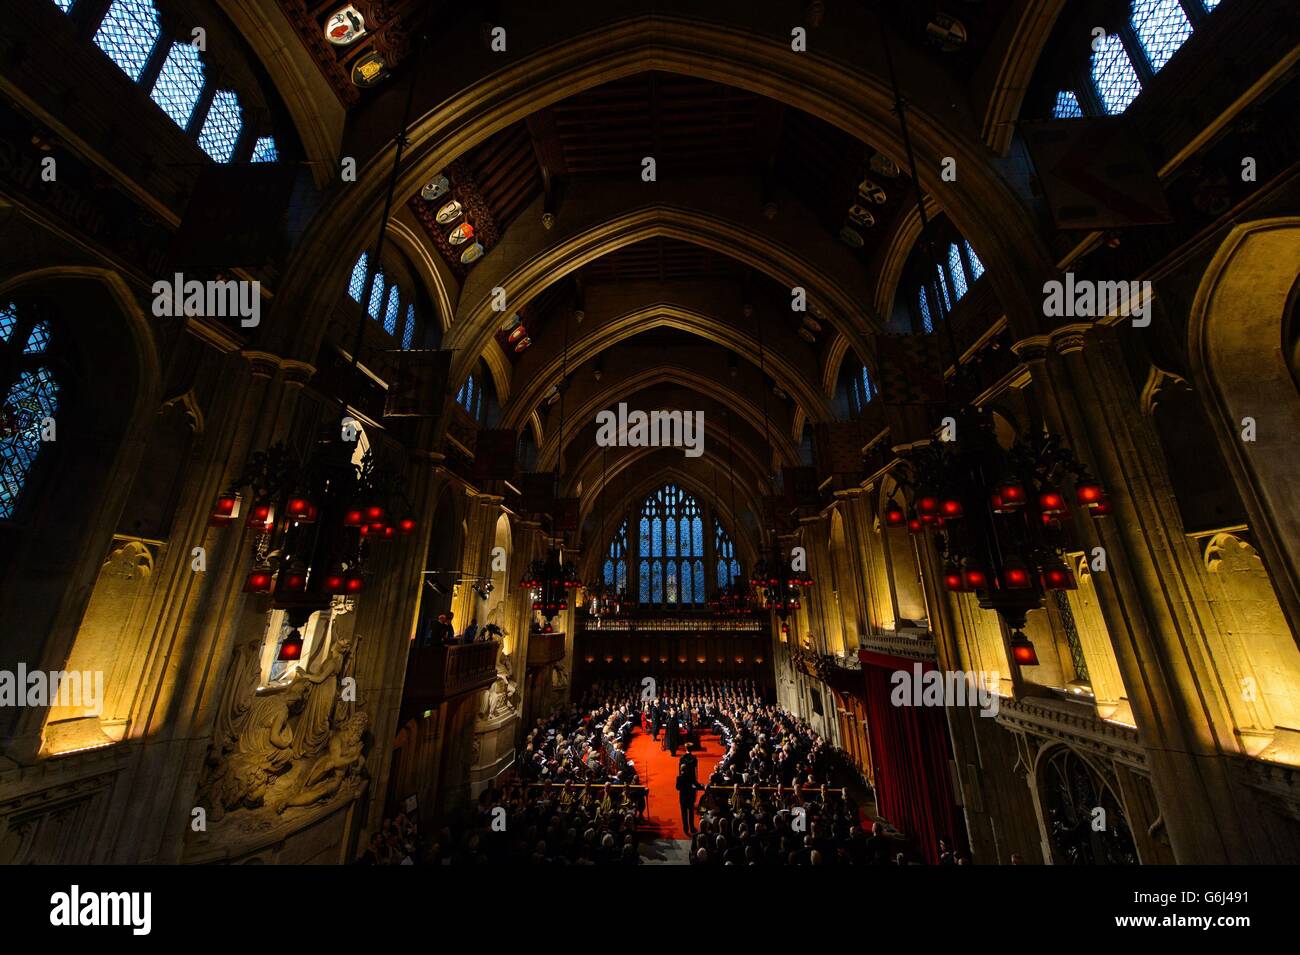 "The Silent Ceremony" im Guildhall in der City of London, in dem der neue Oberbürgermeister von London offiziell ernannt wird. Stockfoto